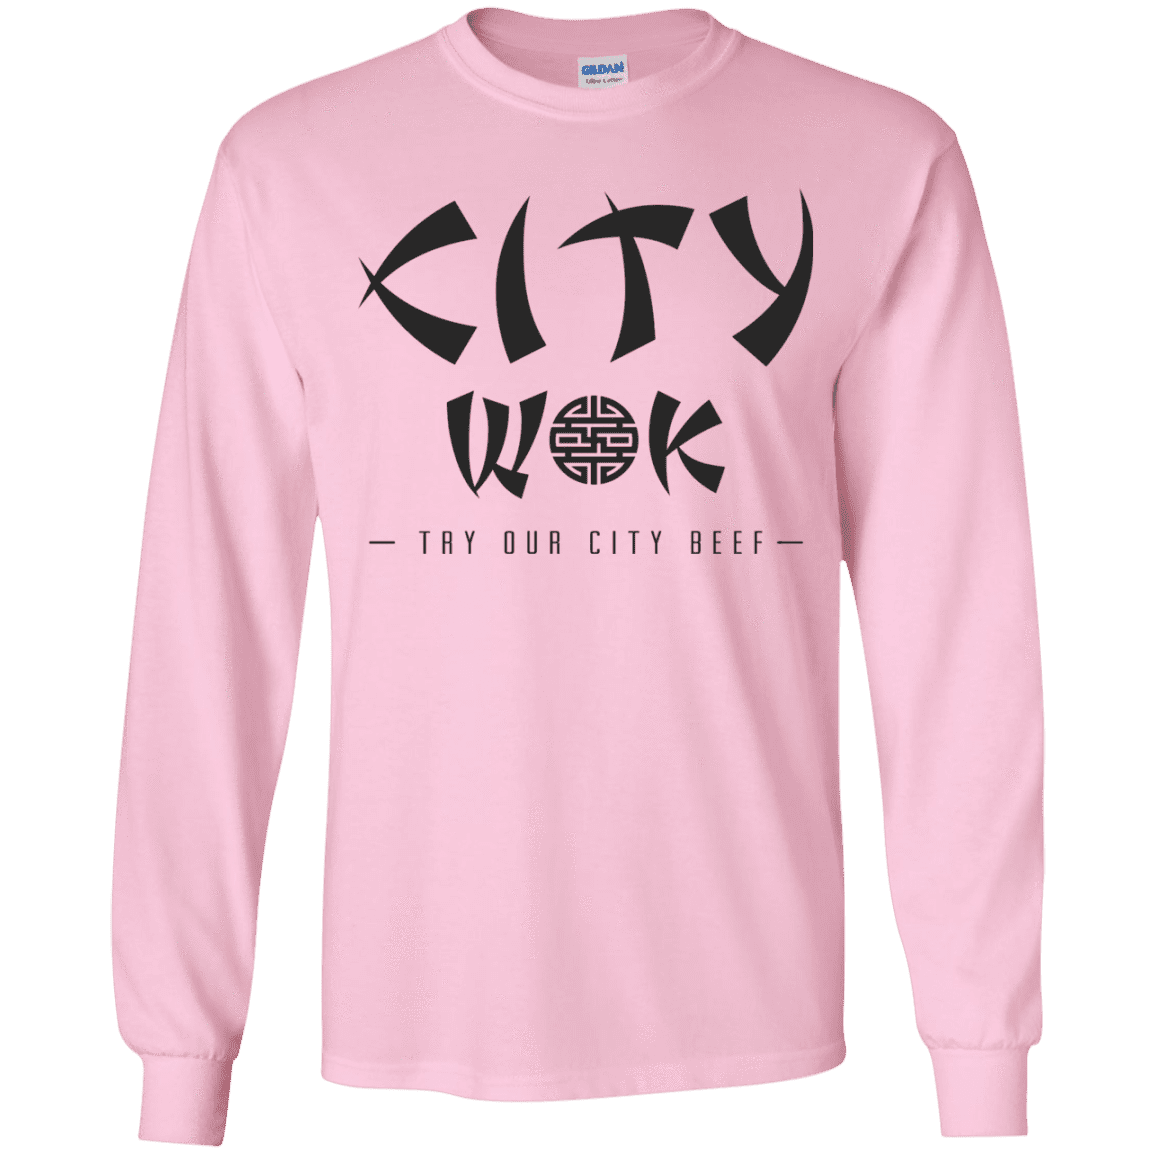 T-Shirts Light Pink / YS City Wok Youth Long Sleeve T-Shirt